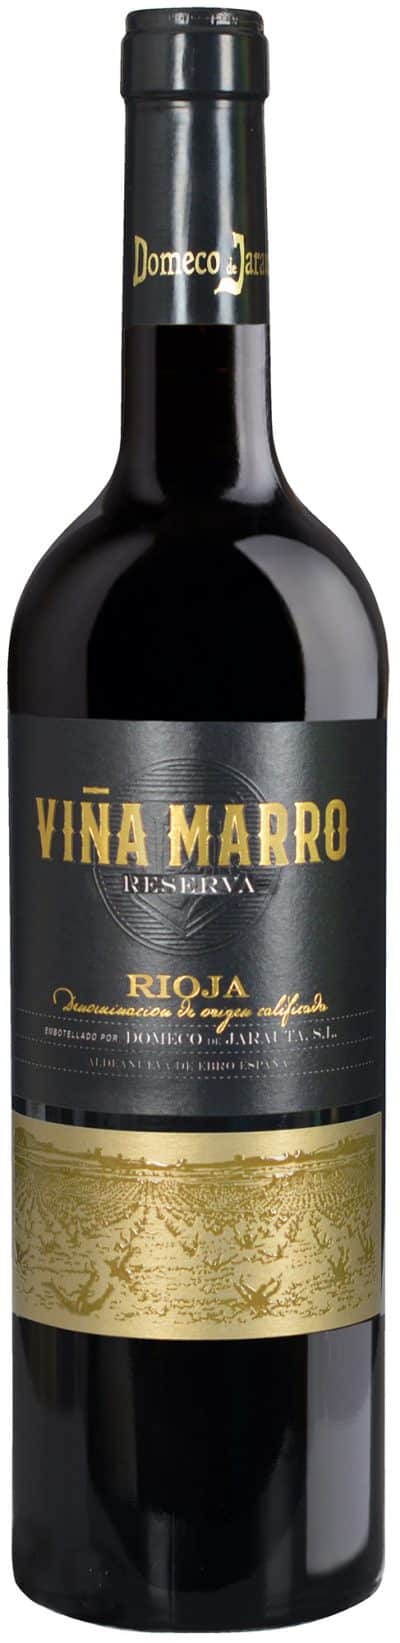 Bodegas Domeco de Jarauta - Vina Marro Rioja Riserva